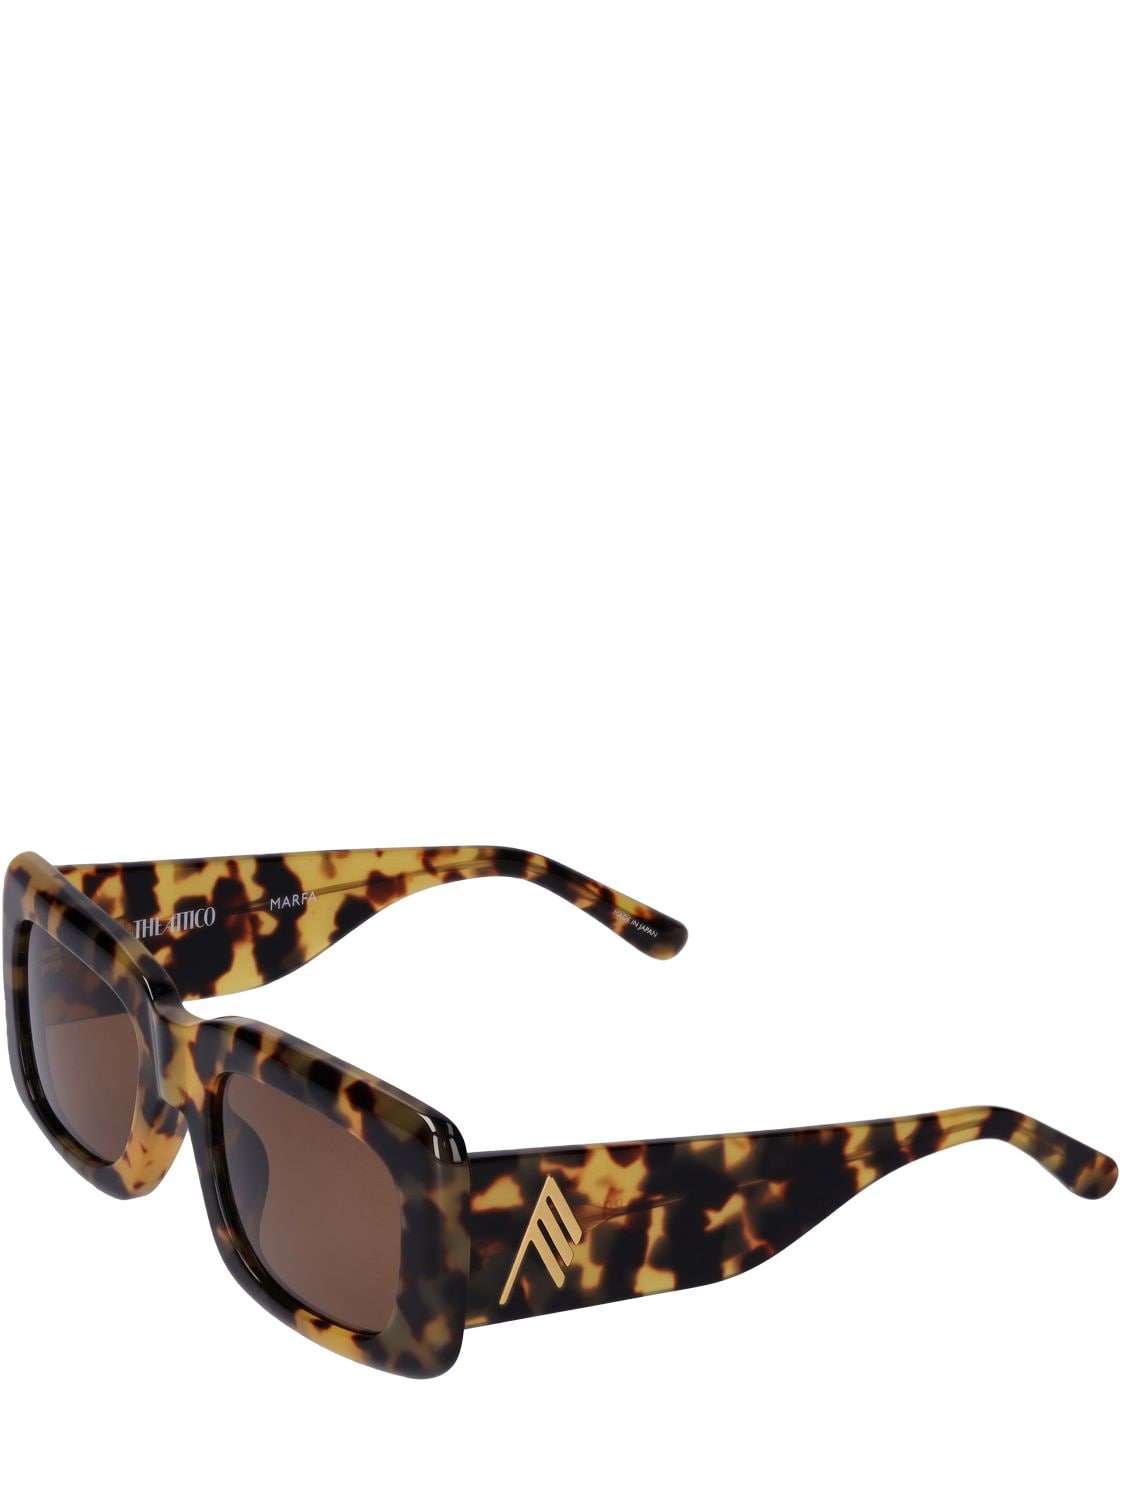 Shop Attico Marfa Squared Acetate Sunglasses In T-shell,brown